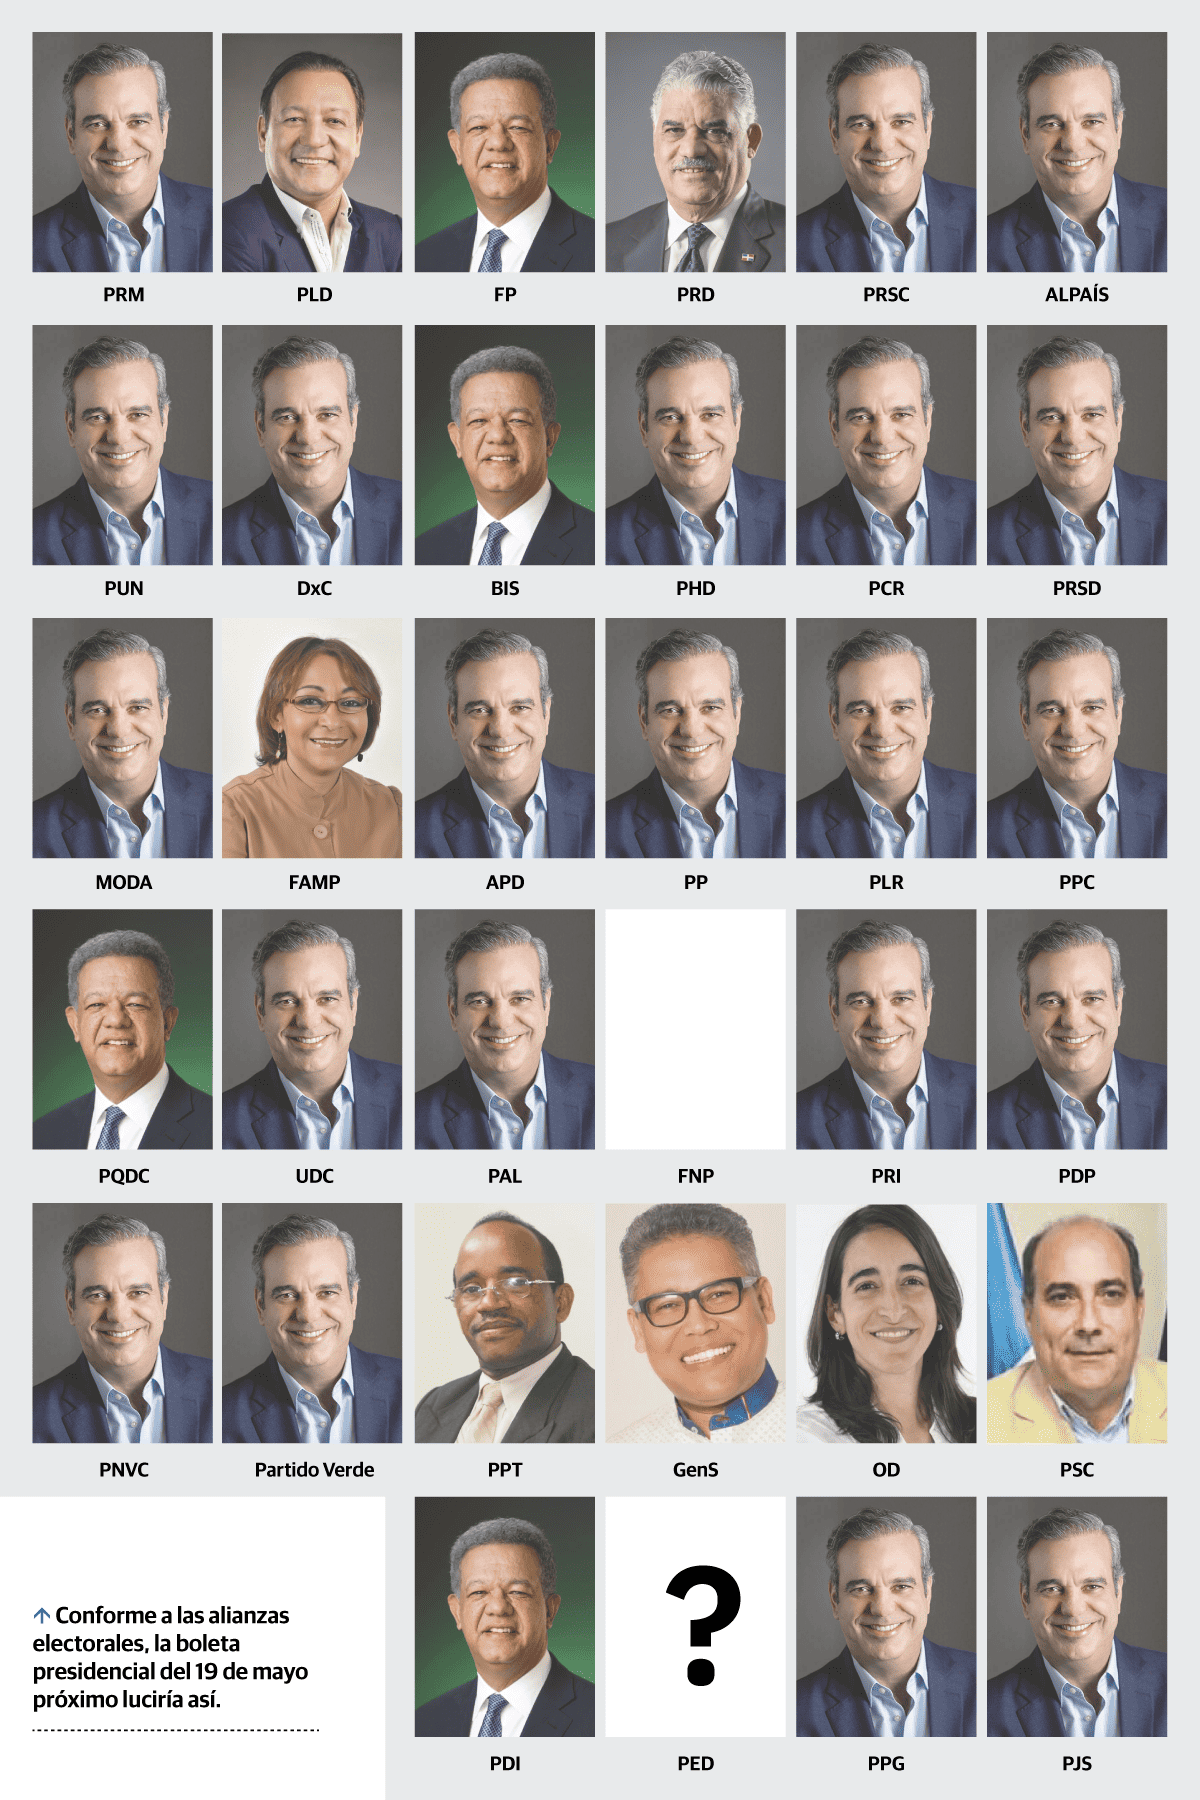 Nueve candidatos a presidentes confirmados y uno por definir para elecciones de mayo